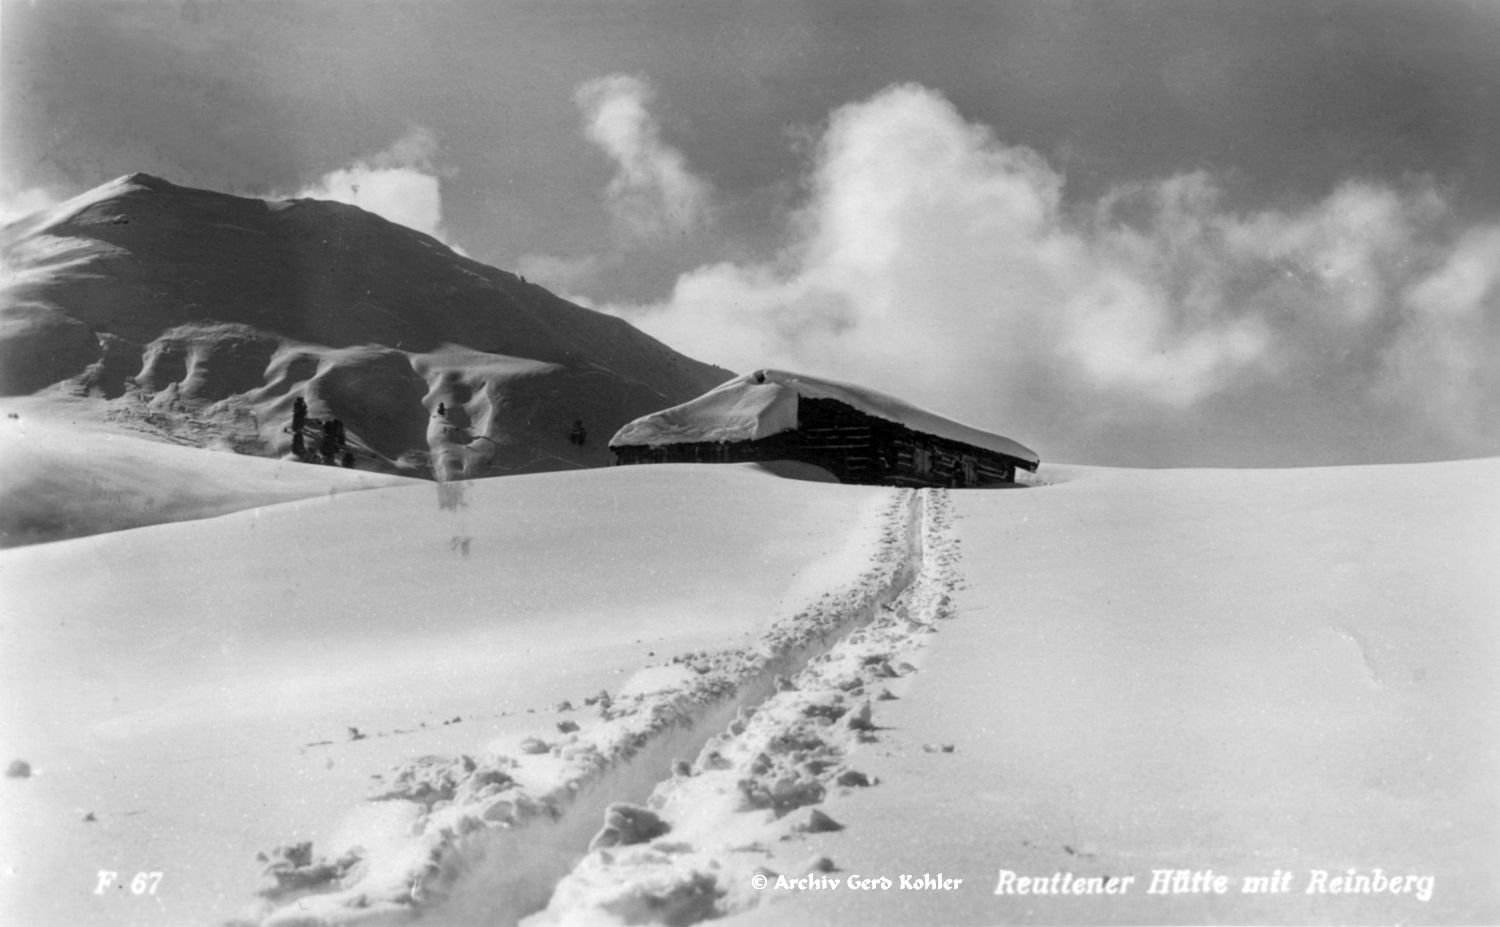 Reuttener Hütte und Reinberg 1933